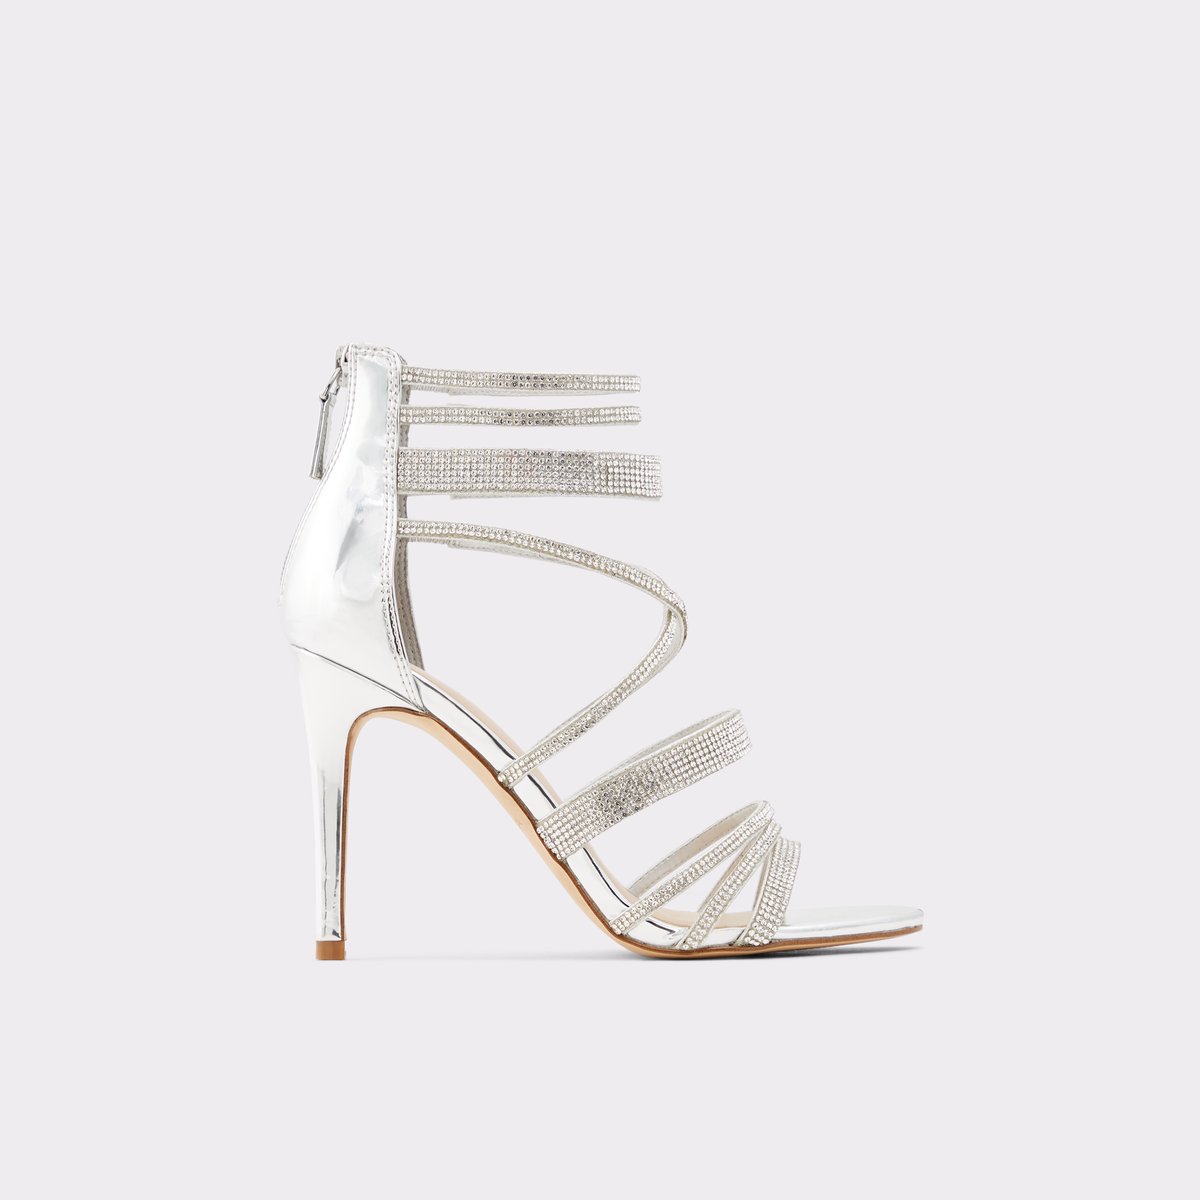 aldo silver high heels \u003e Up to 61% OFF 